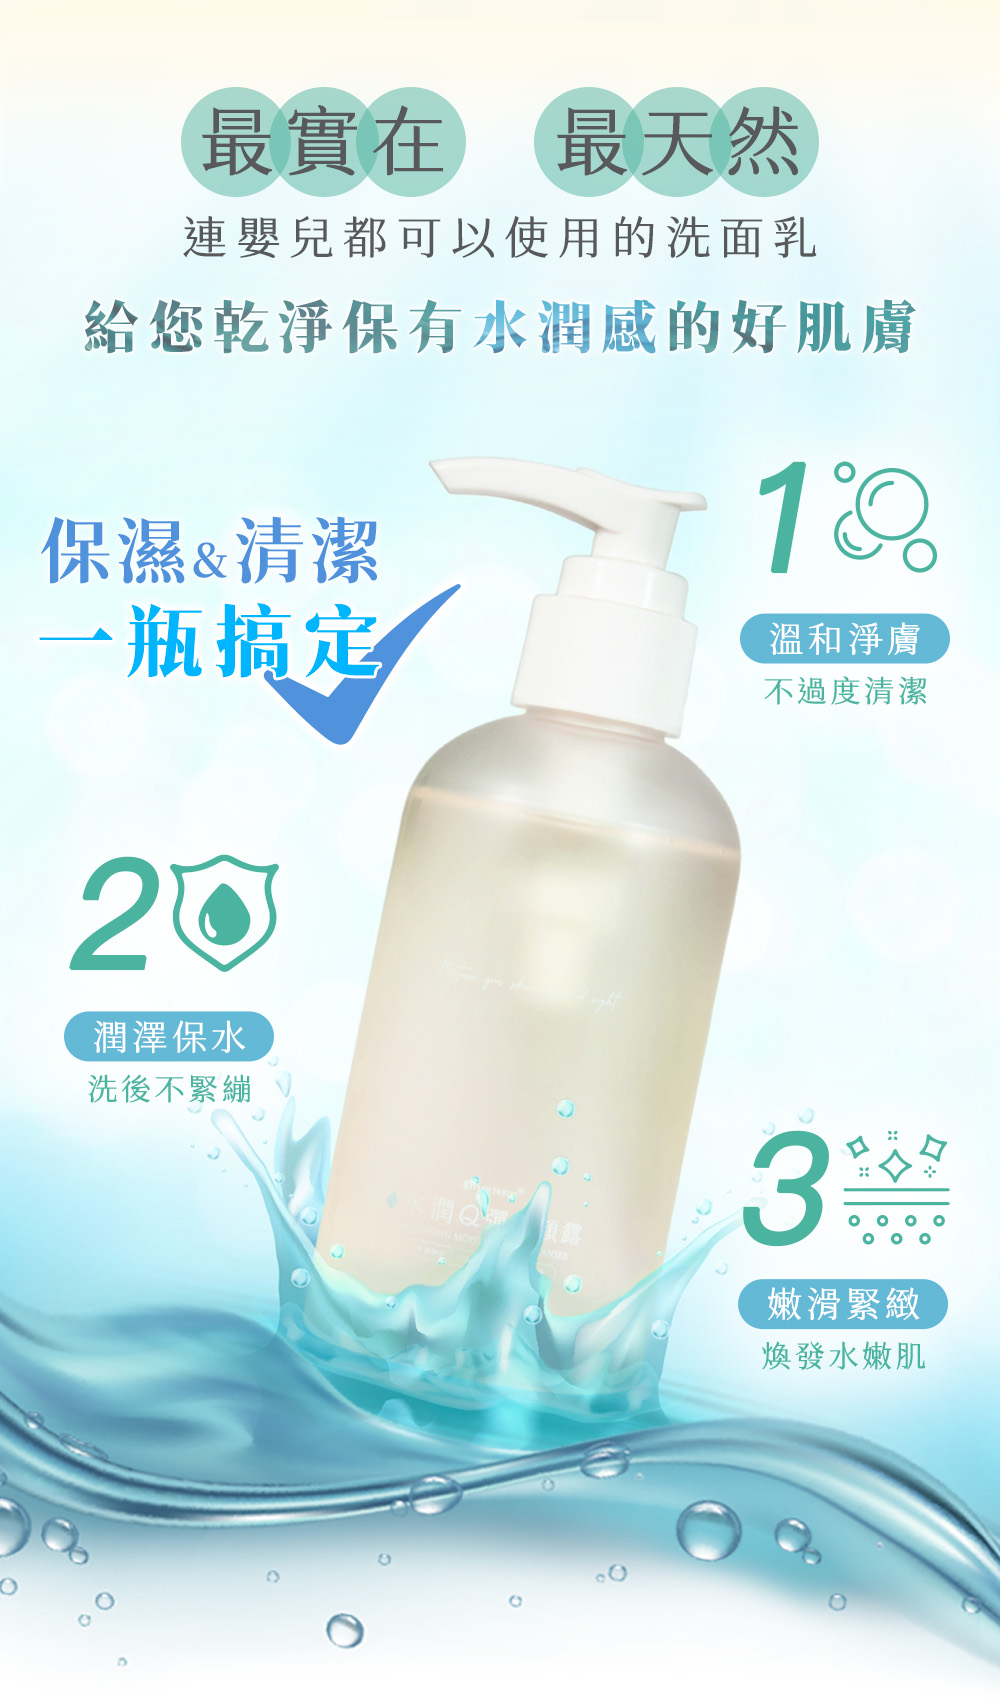 保濕 & 清潔
一瓶搞定 給您乾淨保有水潤感的好肌膚 最實在 x 最天然
連嬰兒都可以使用的洗面乳
